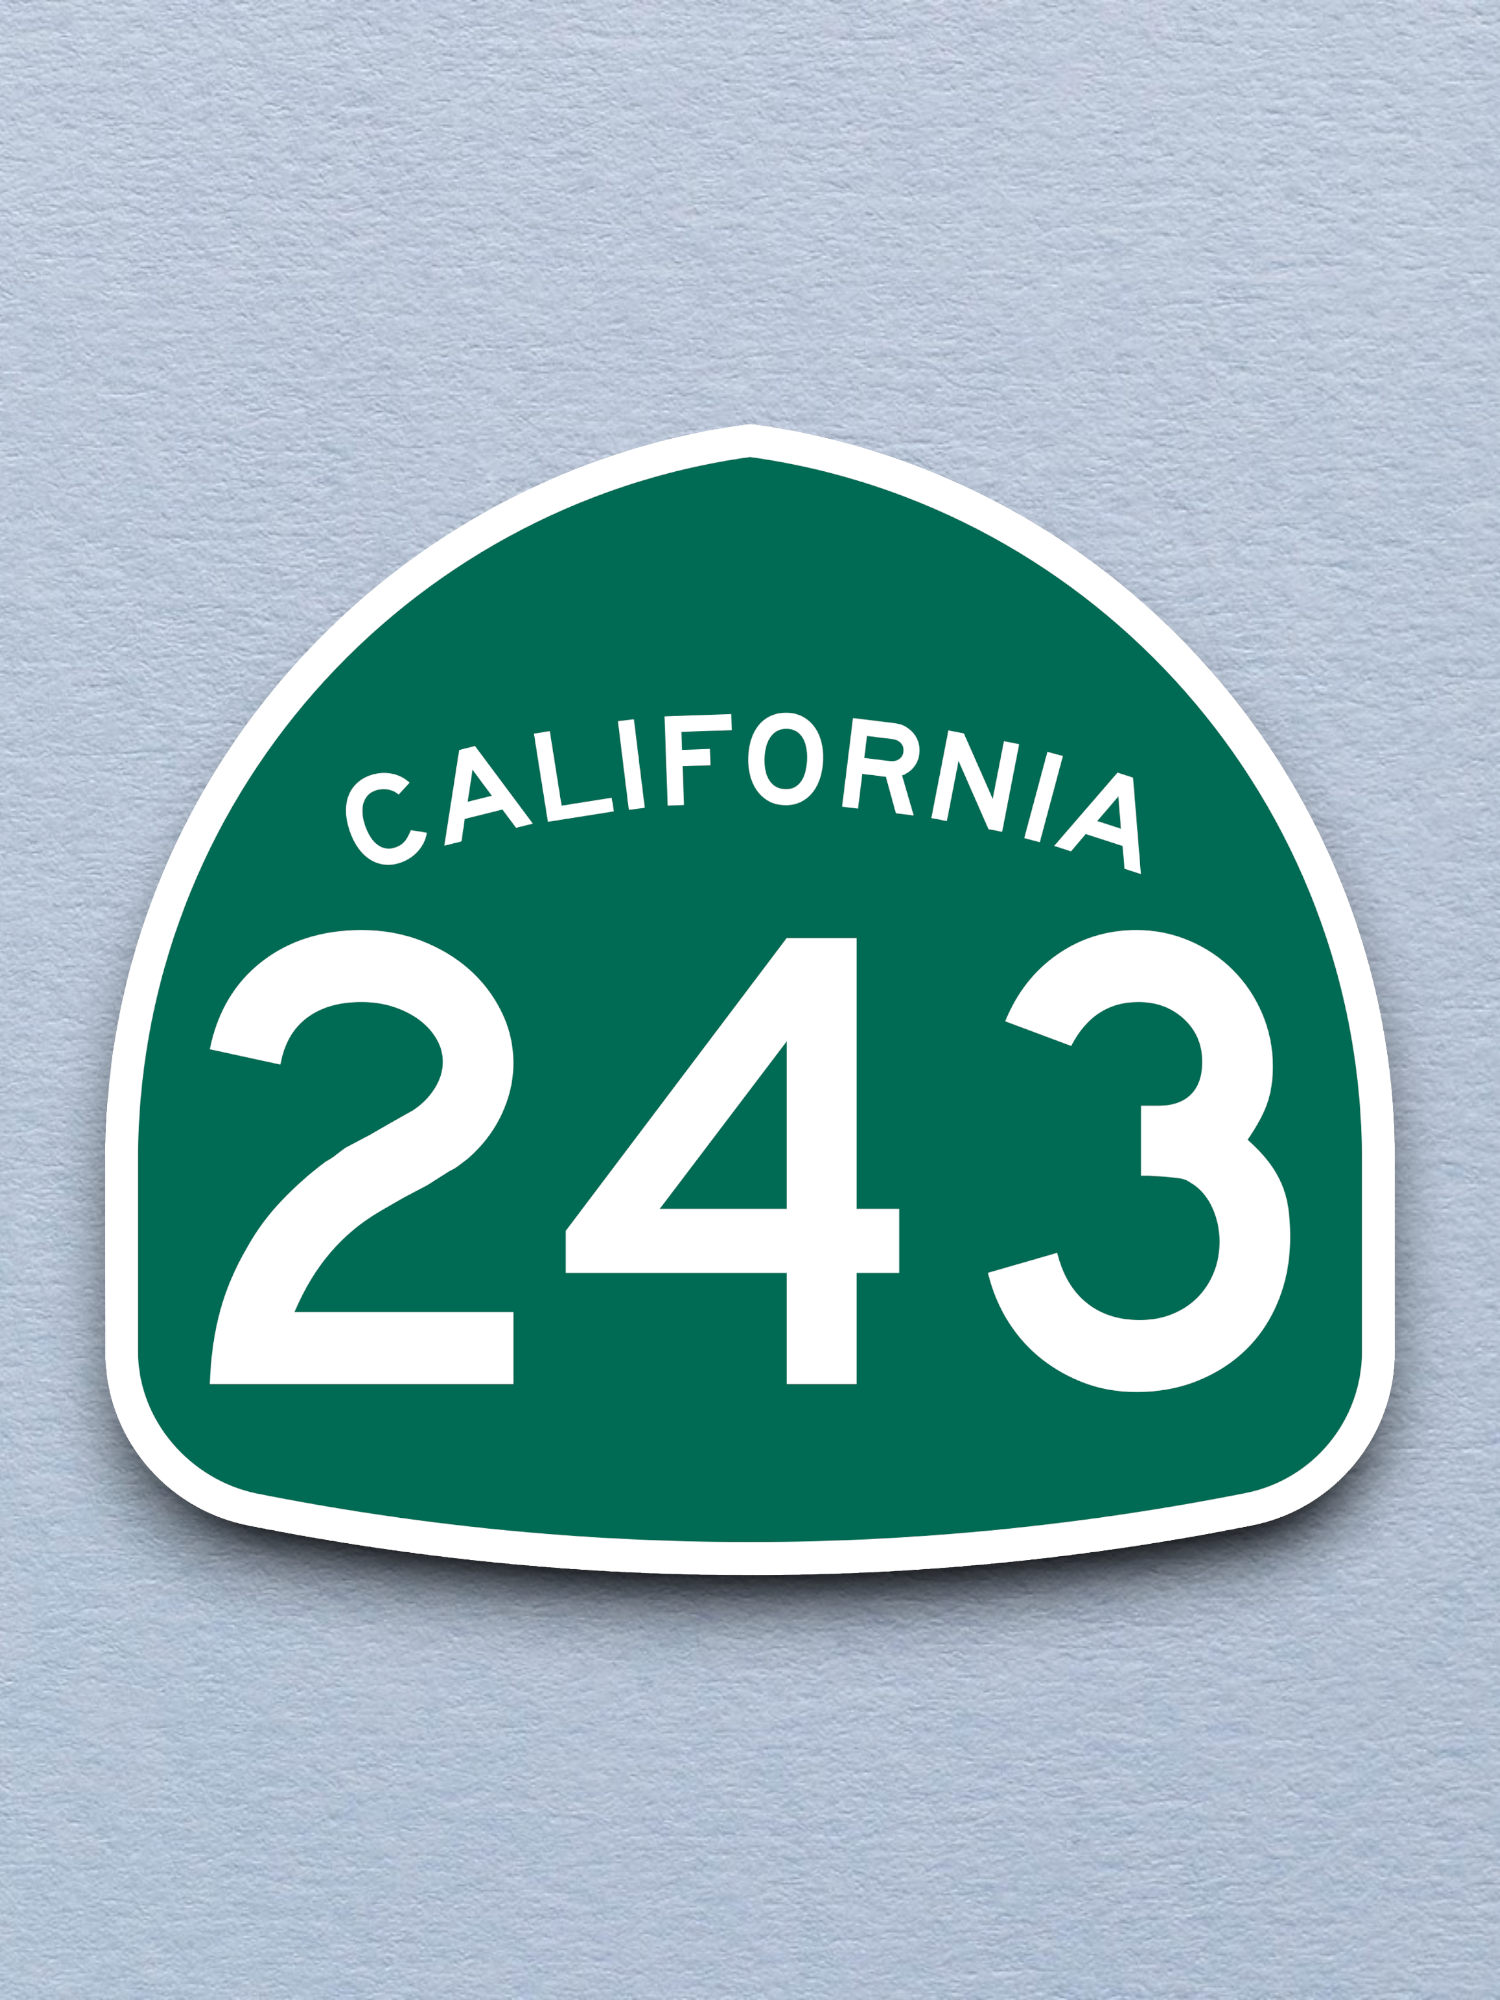 California State Route 243 Sticker